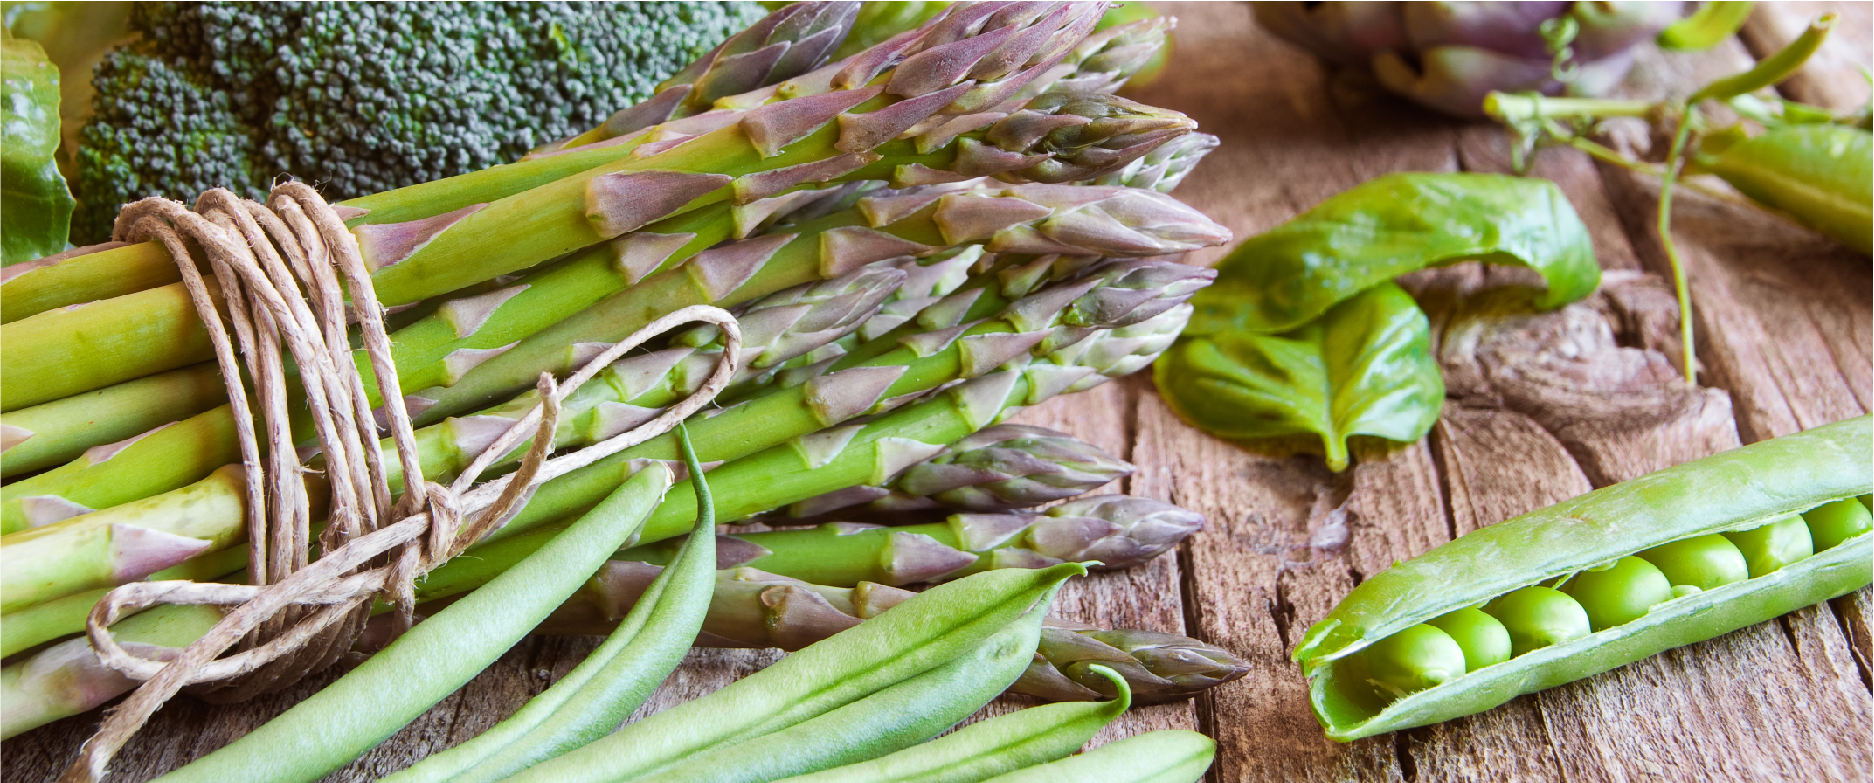 Sautéed Peas and Asparagus